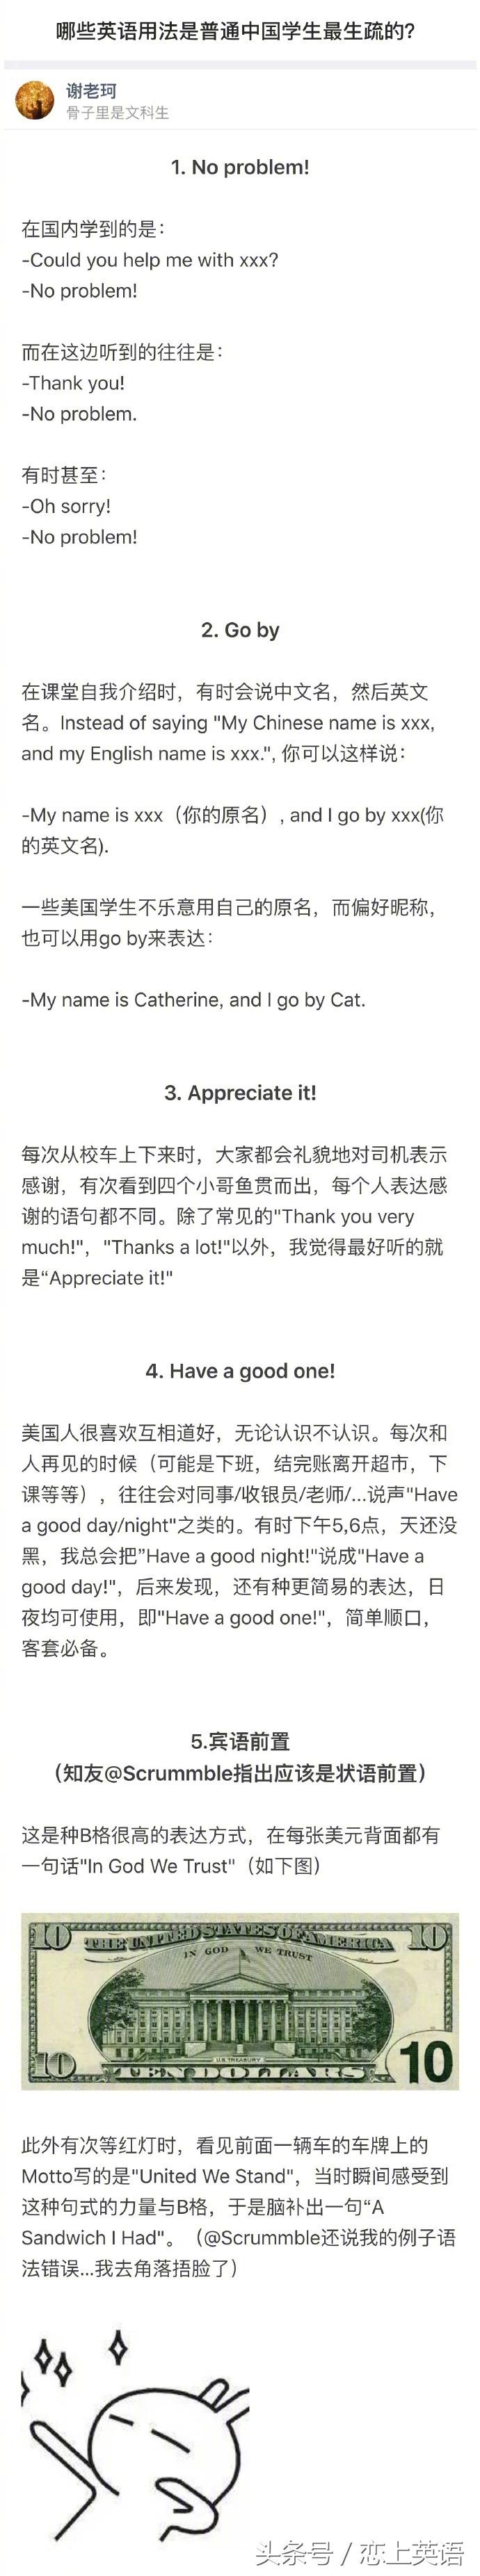 哪些英语用法是普通中国学生最生疏的？-笑傲英语网